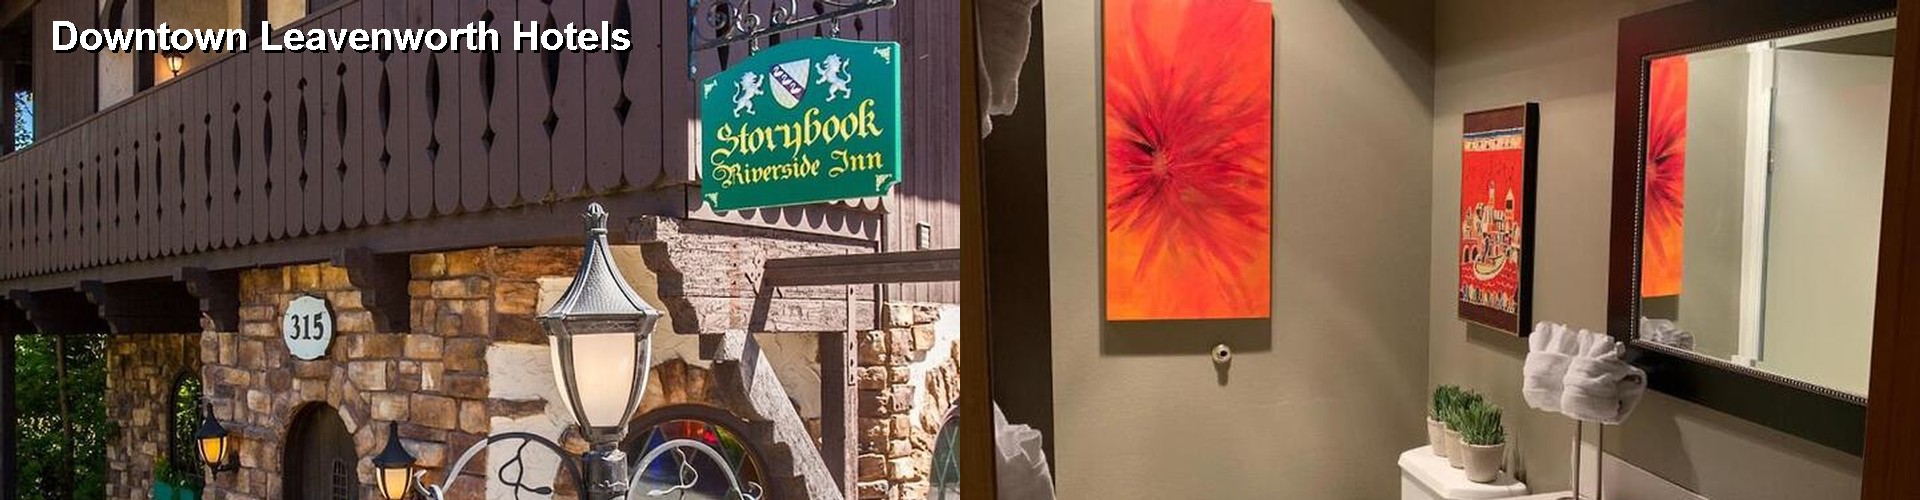 5 Best Hotels near Downtown Leavenworth